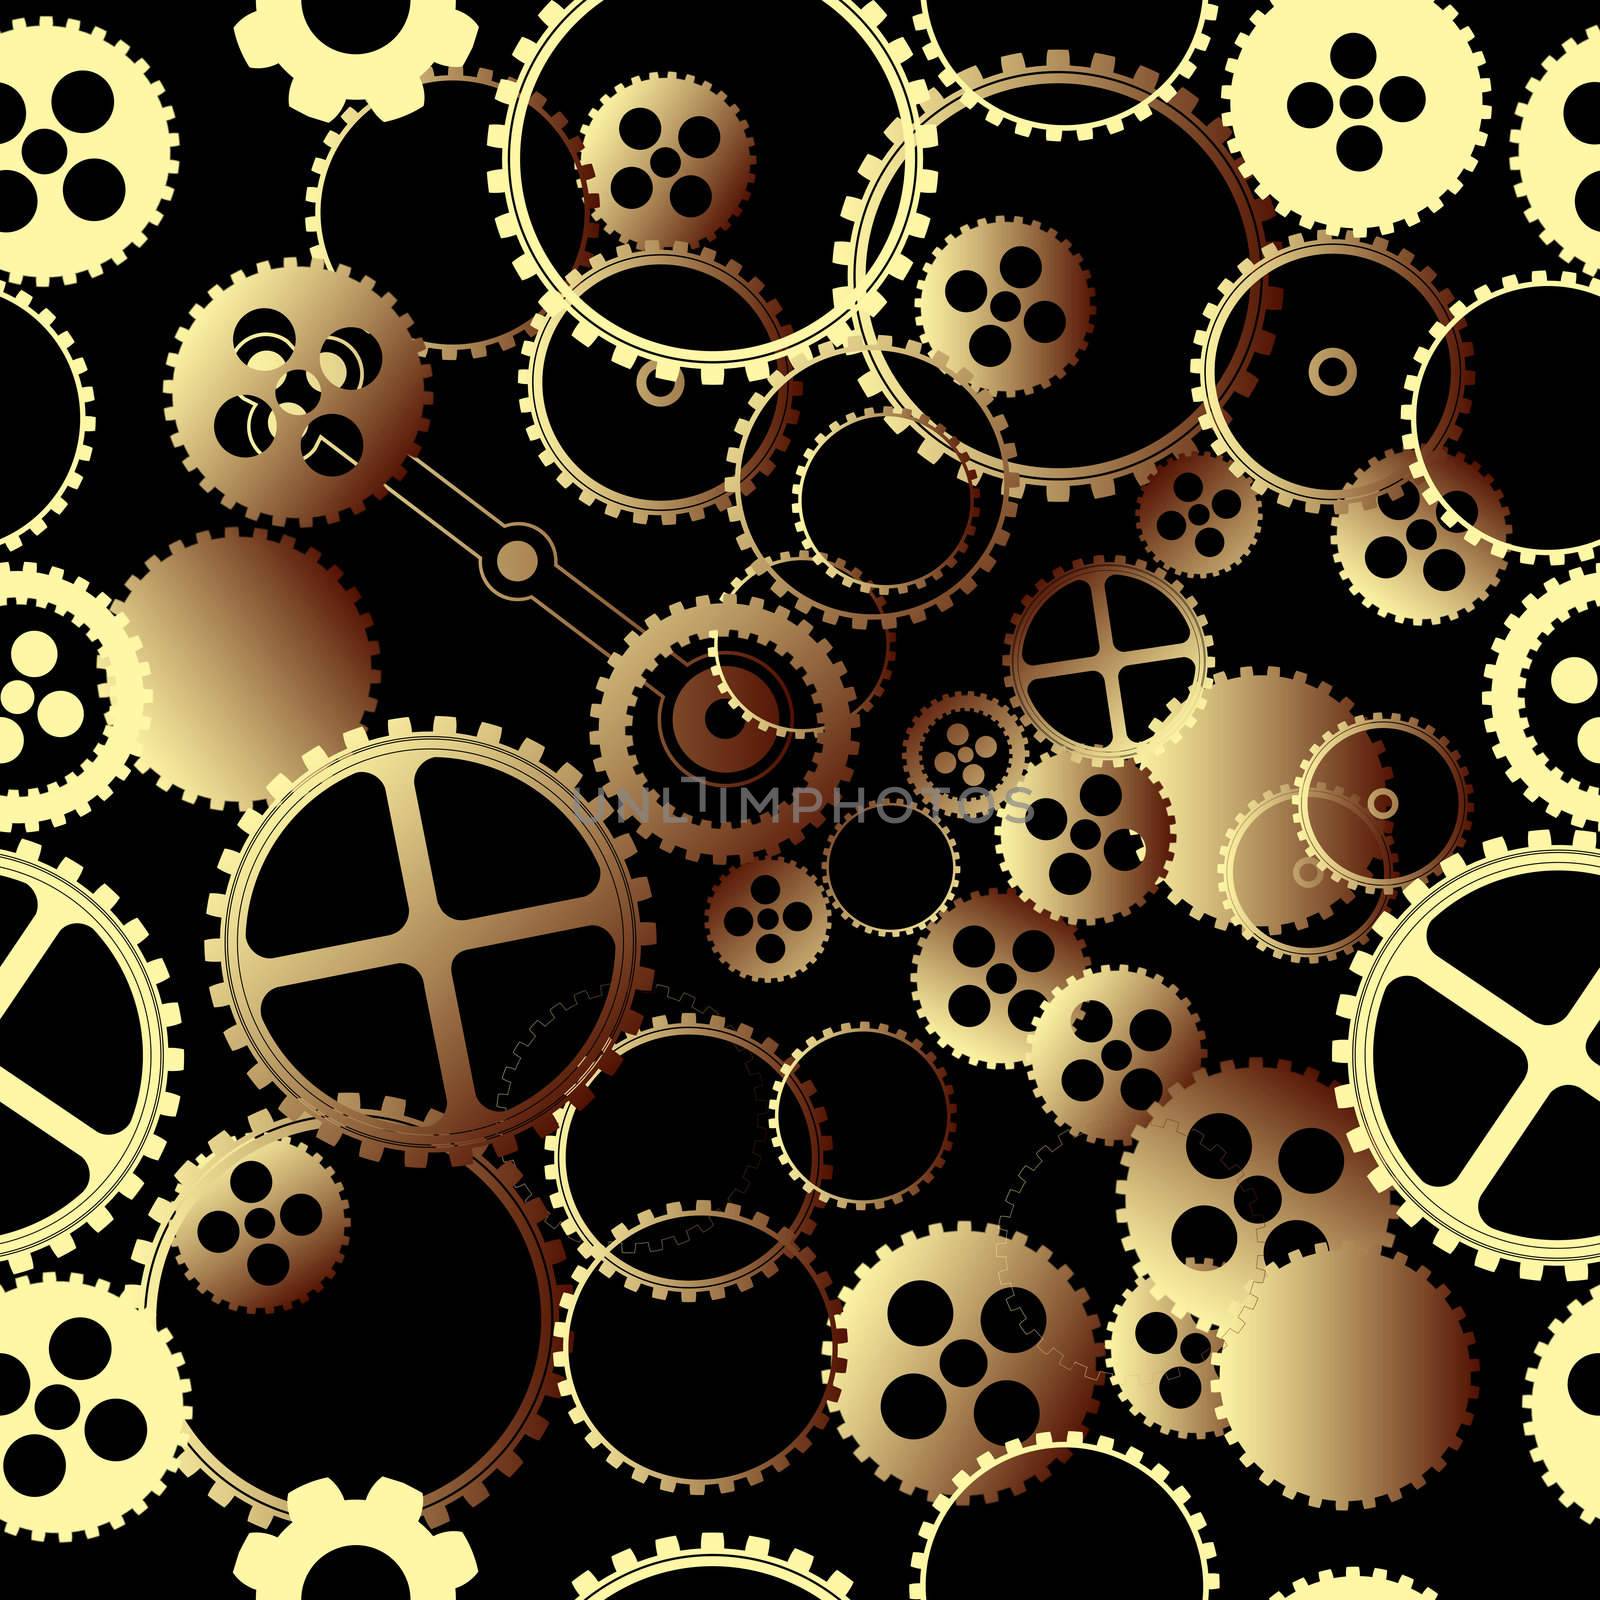 Clockwork gears pattern by Lirch